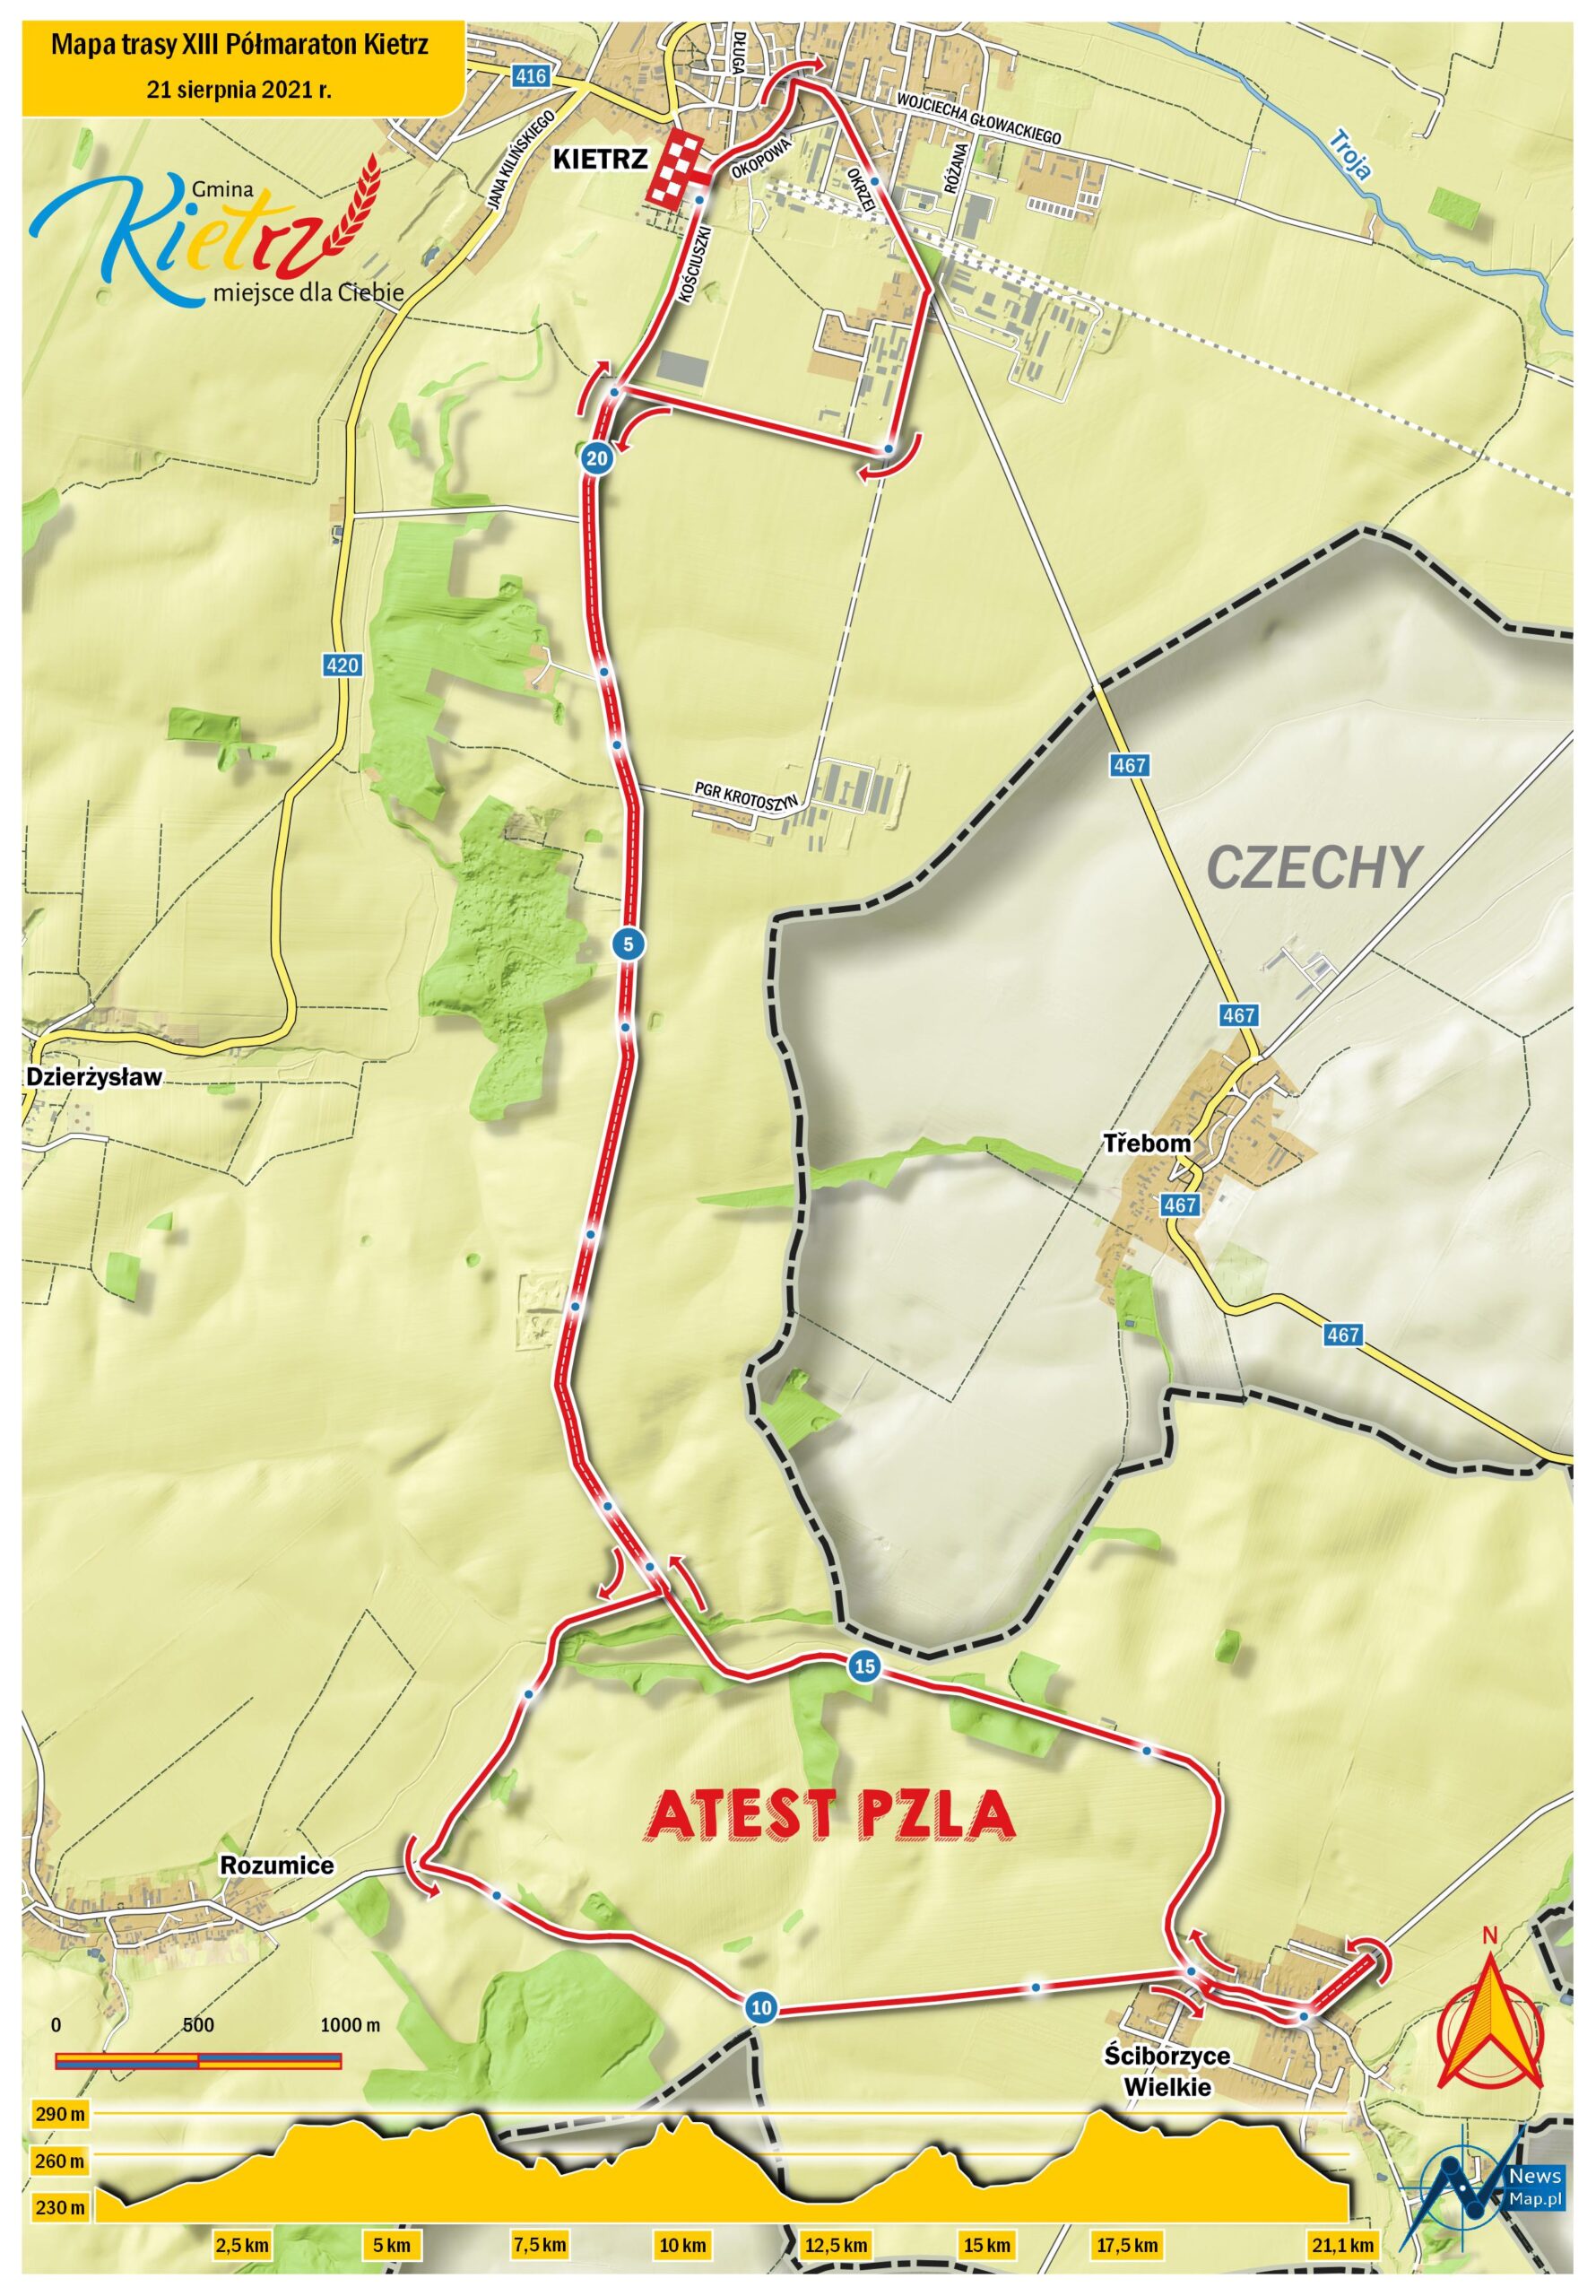 Mapa-statyczna-XIII-Półmaratonu-Kietrz-on-line